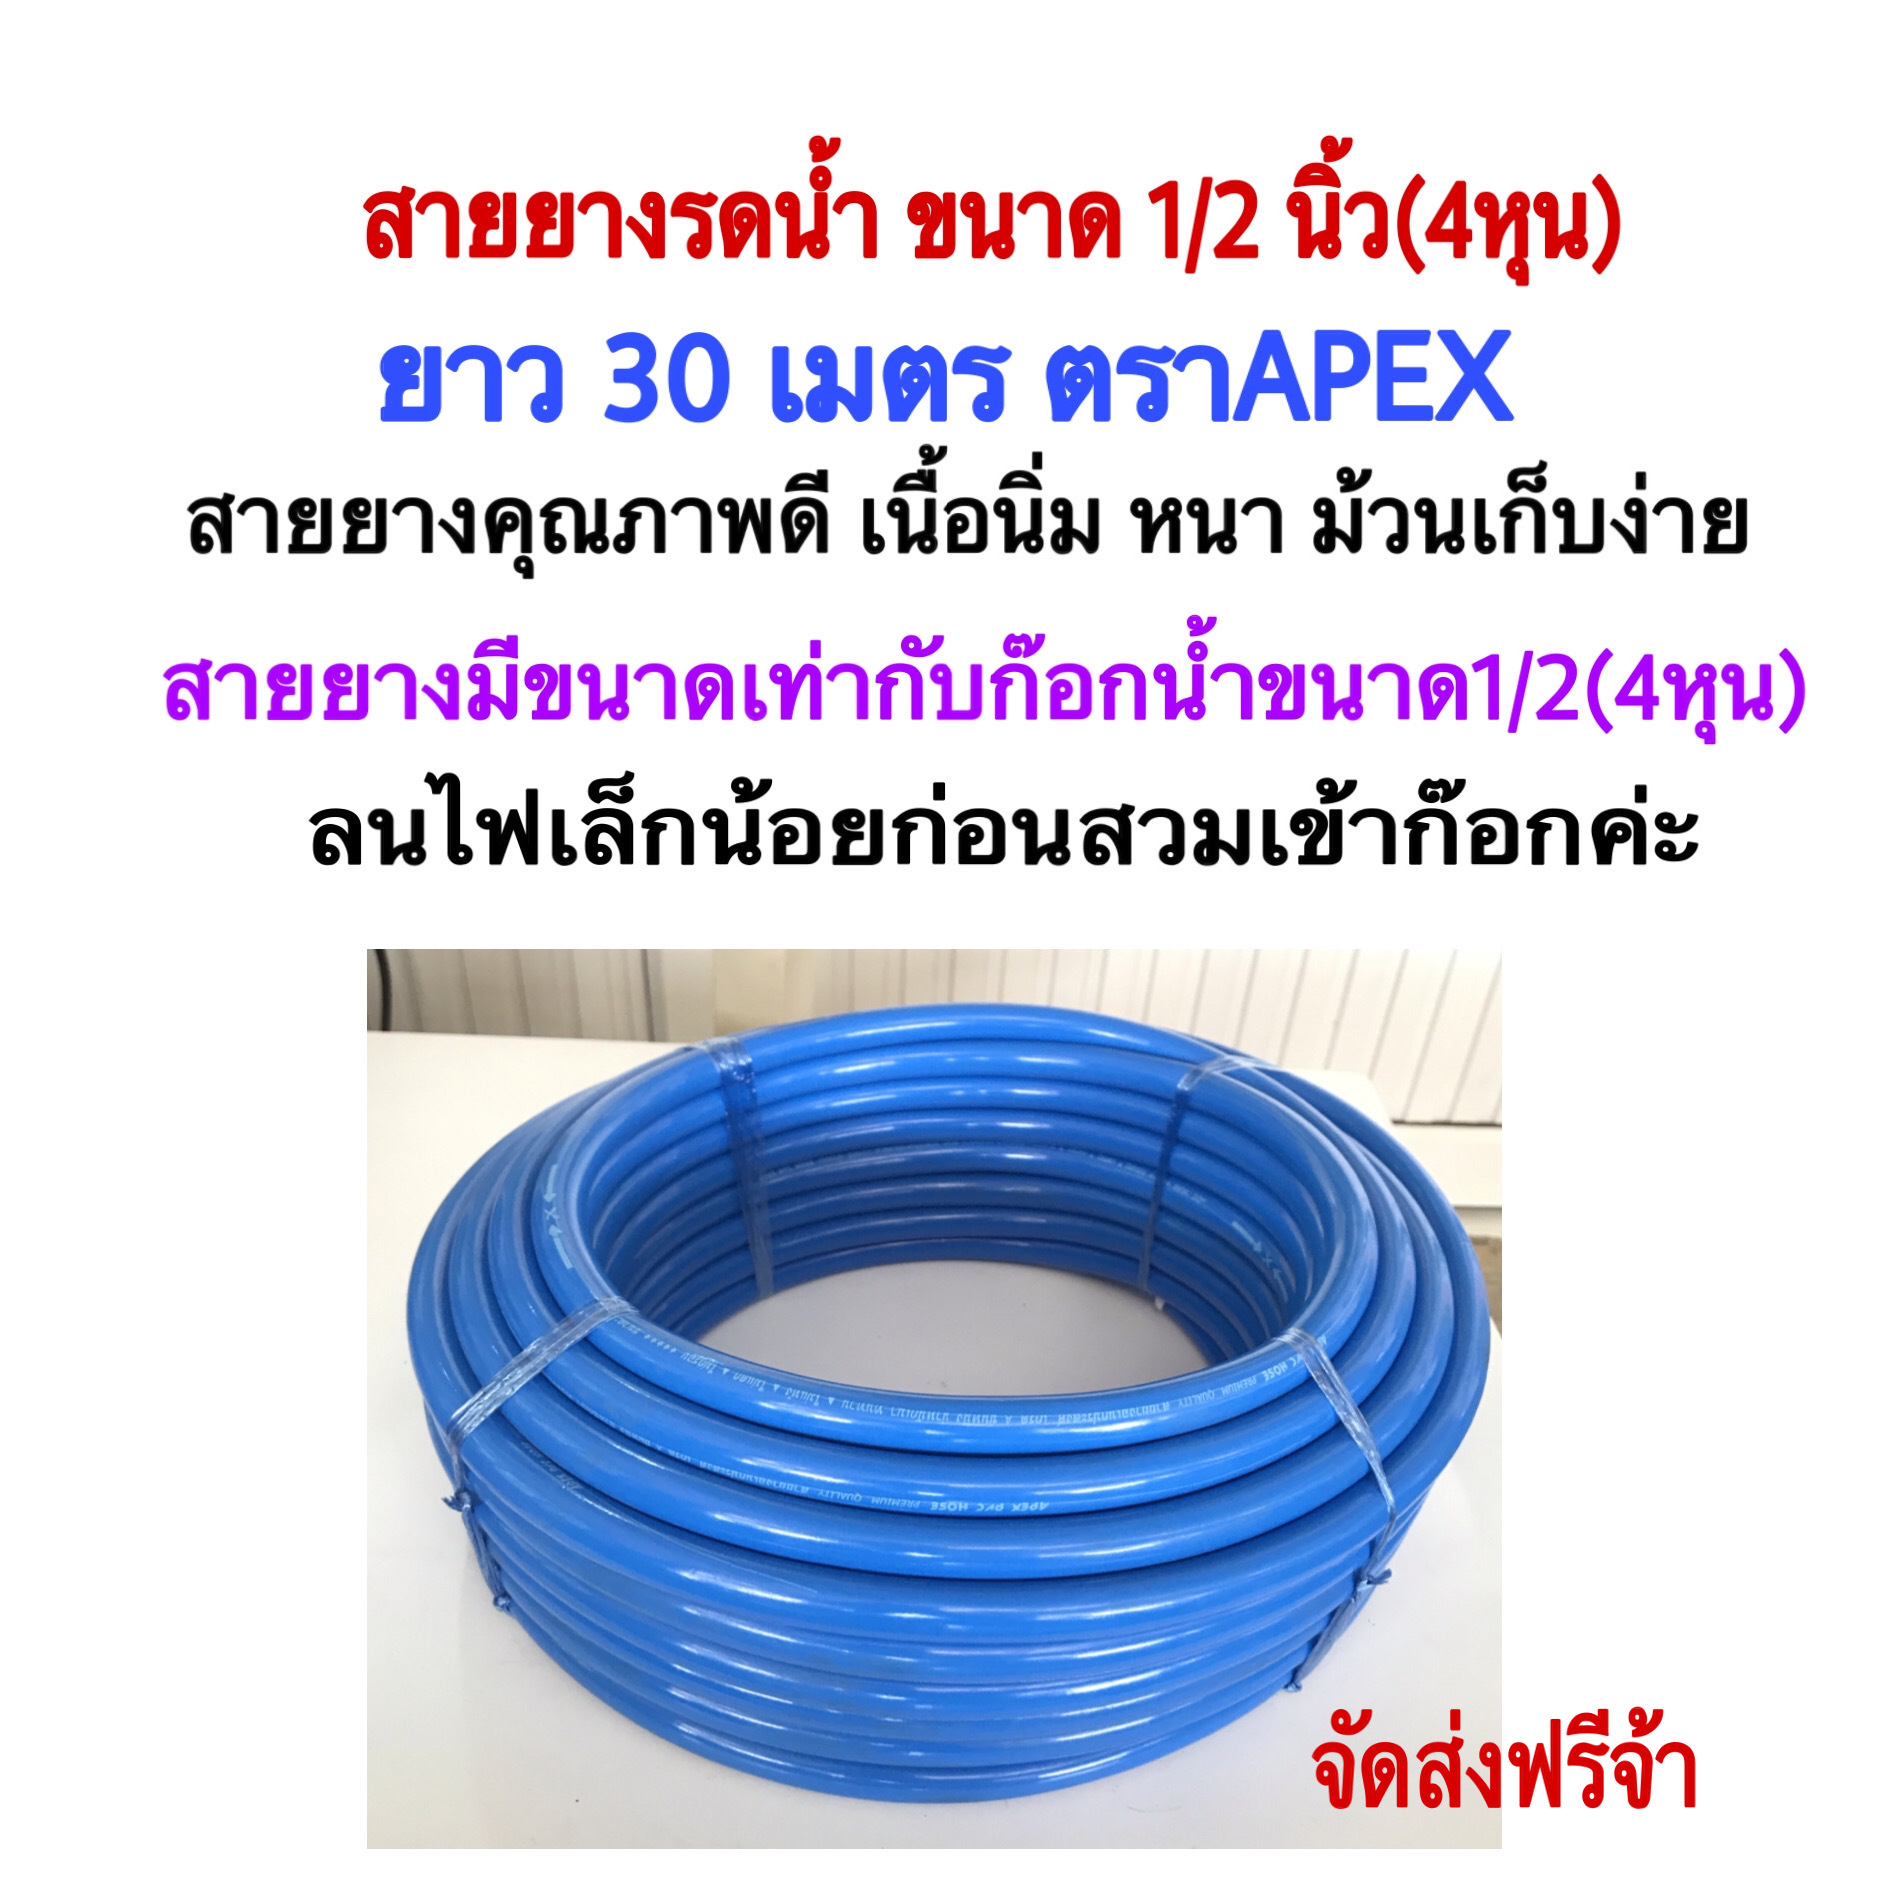 สายยางสีฟ้าขนาด 1/2นิ้ว(4หุน)ยาว 30 เมตร ตราAPEX ผลิตจากพลาสติกเกรดA